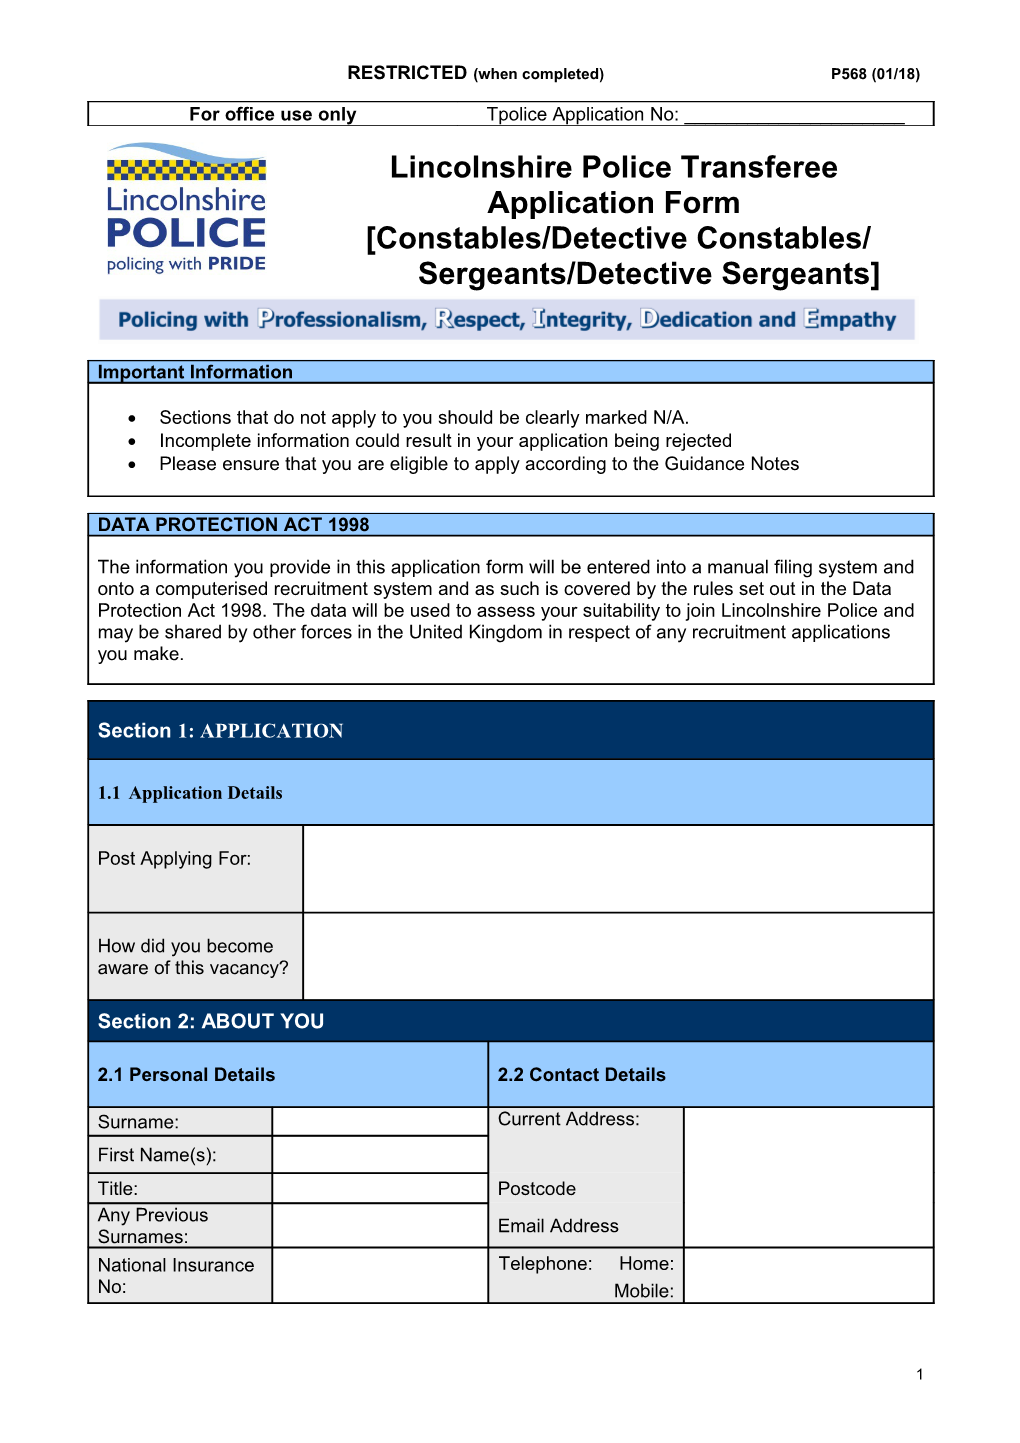 Constables/Detectiveconstables/ Sergeants/Detective Sergeants